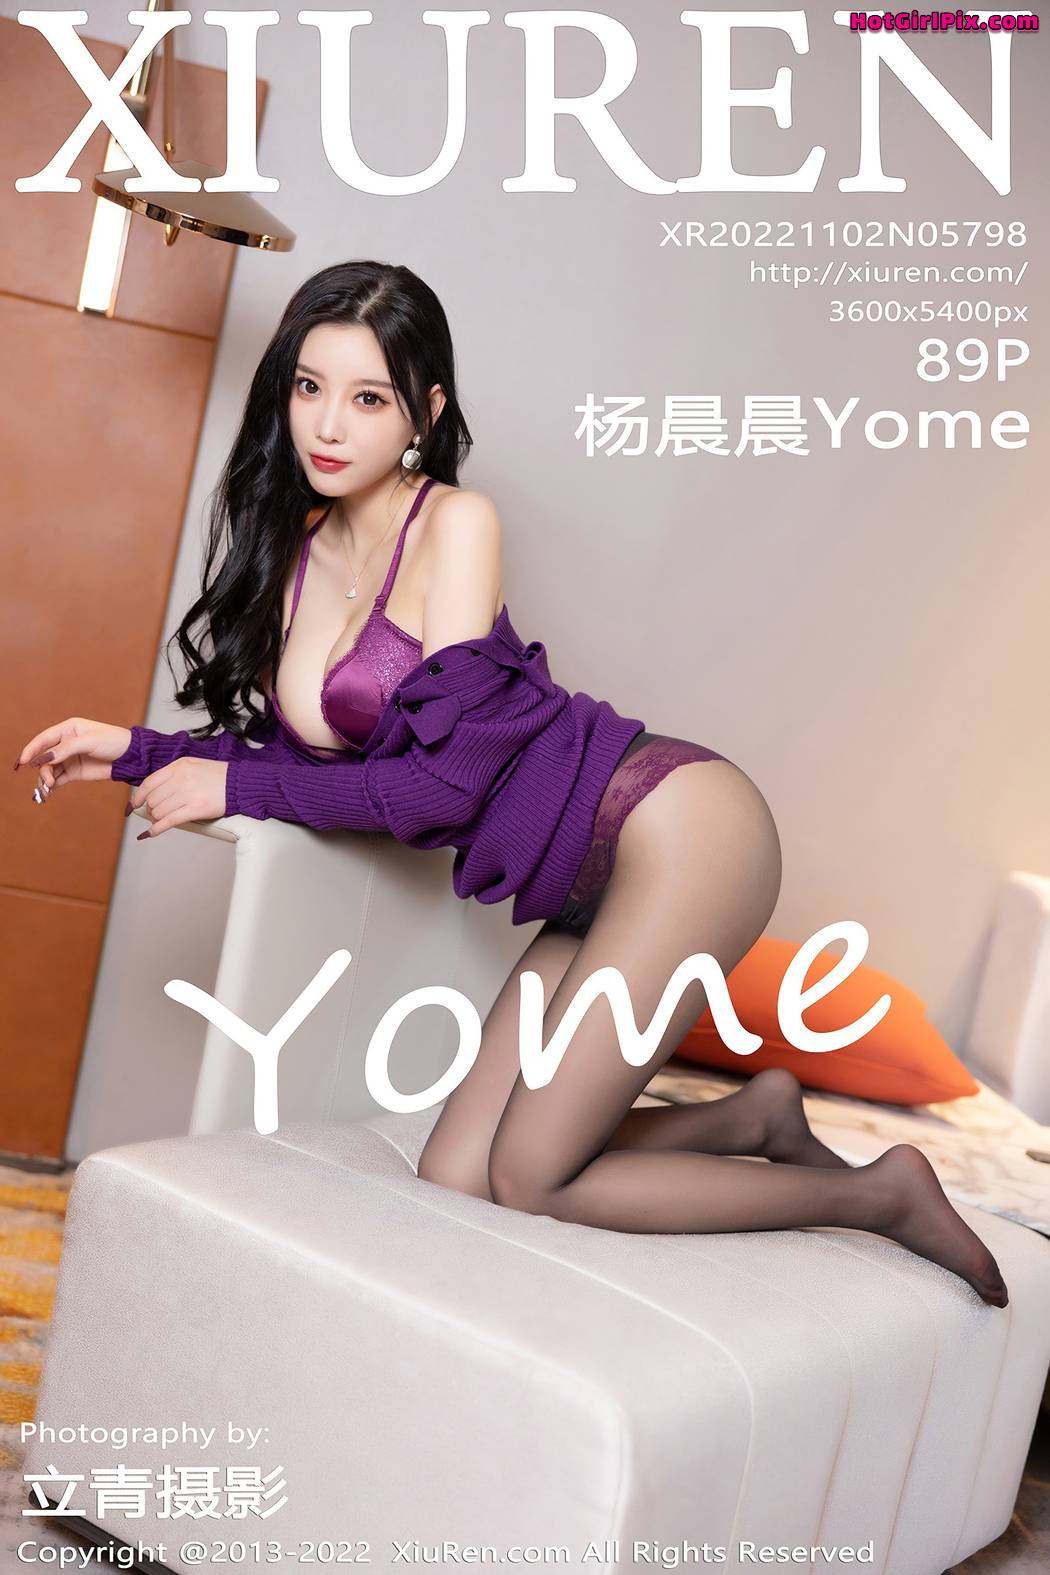 [XIUREN] No.5798 Yang Chen Chen 杨晨晨Yome (Yang Chen Chen 杨晨晨sugar) Cover Photo